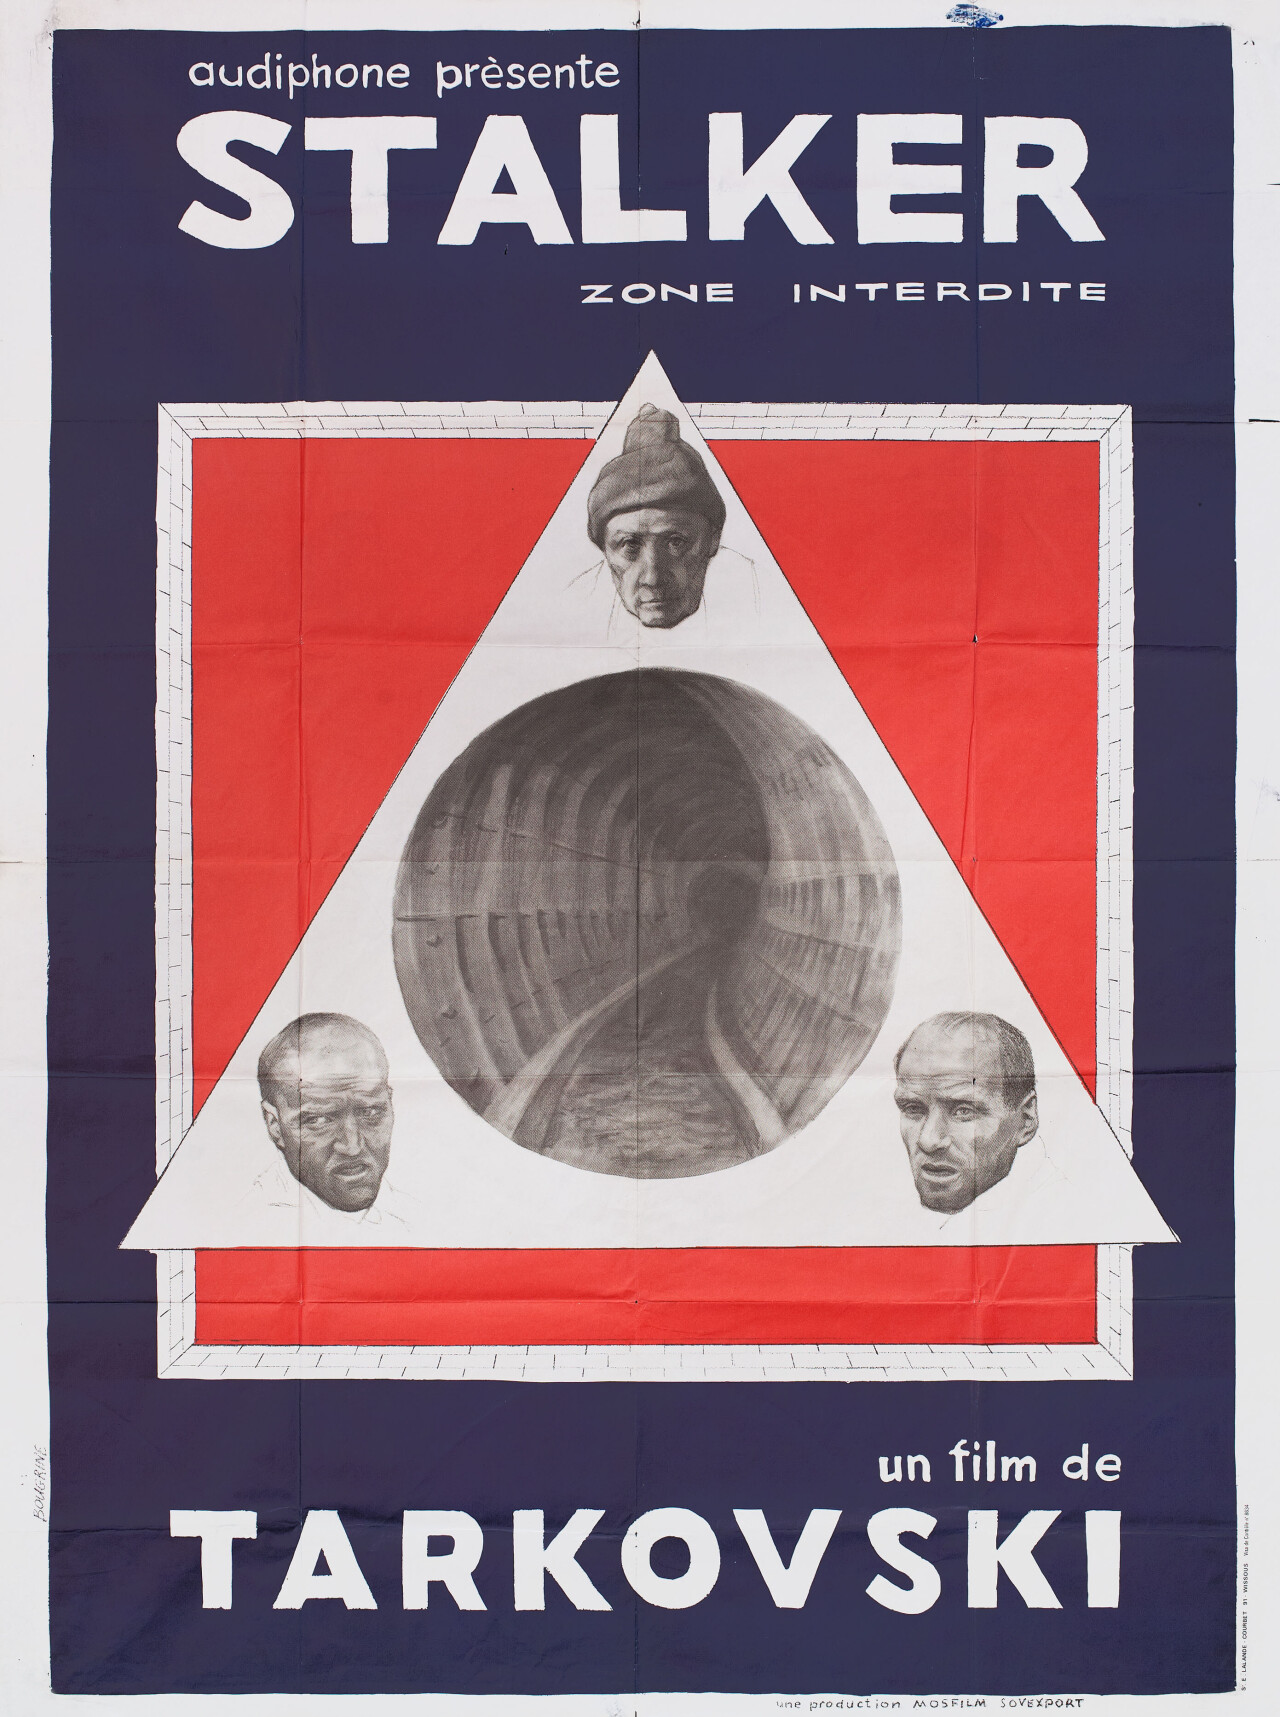 Сталкер (Stalker, 1979), режиссёр Андрей Тарковский, французский постер к фильму, автор Бугрин (графический дизайн, 1981 год)